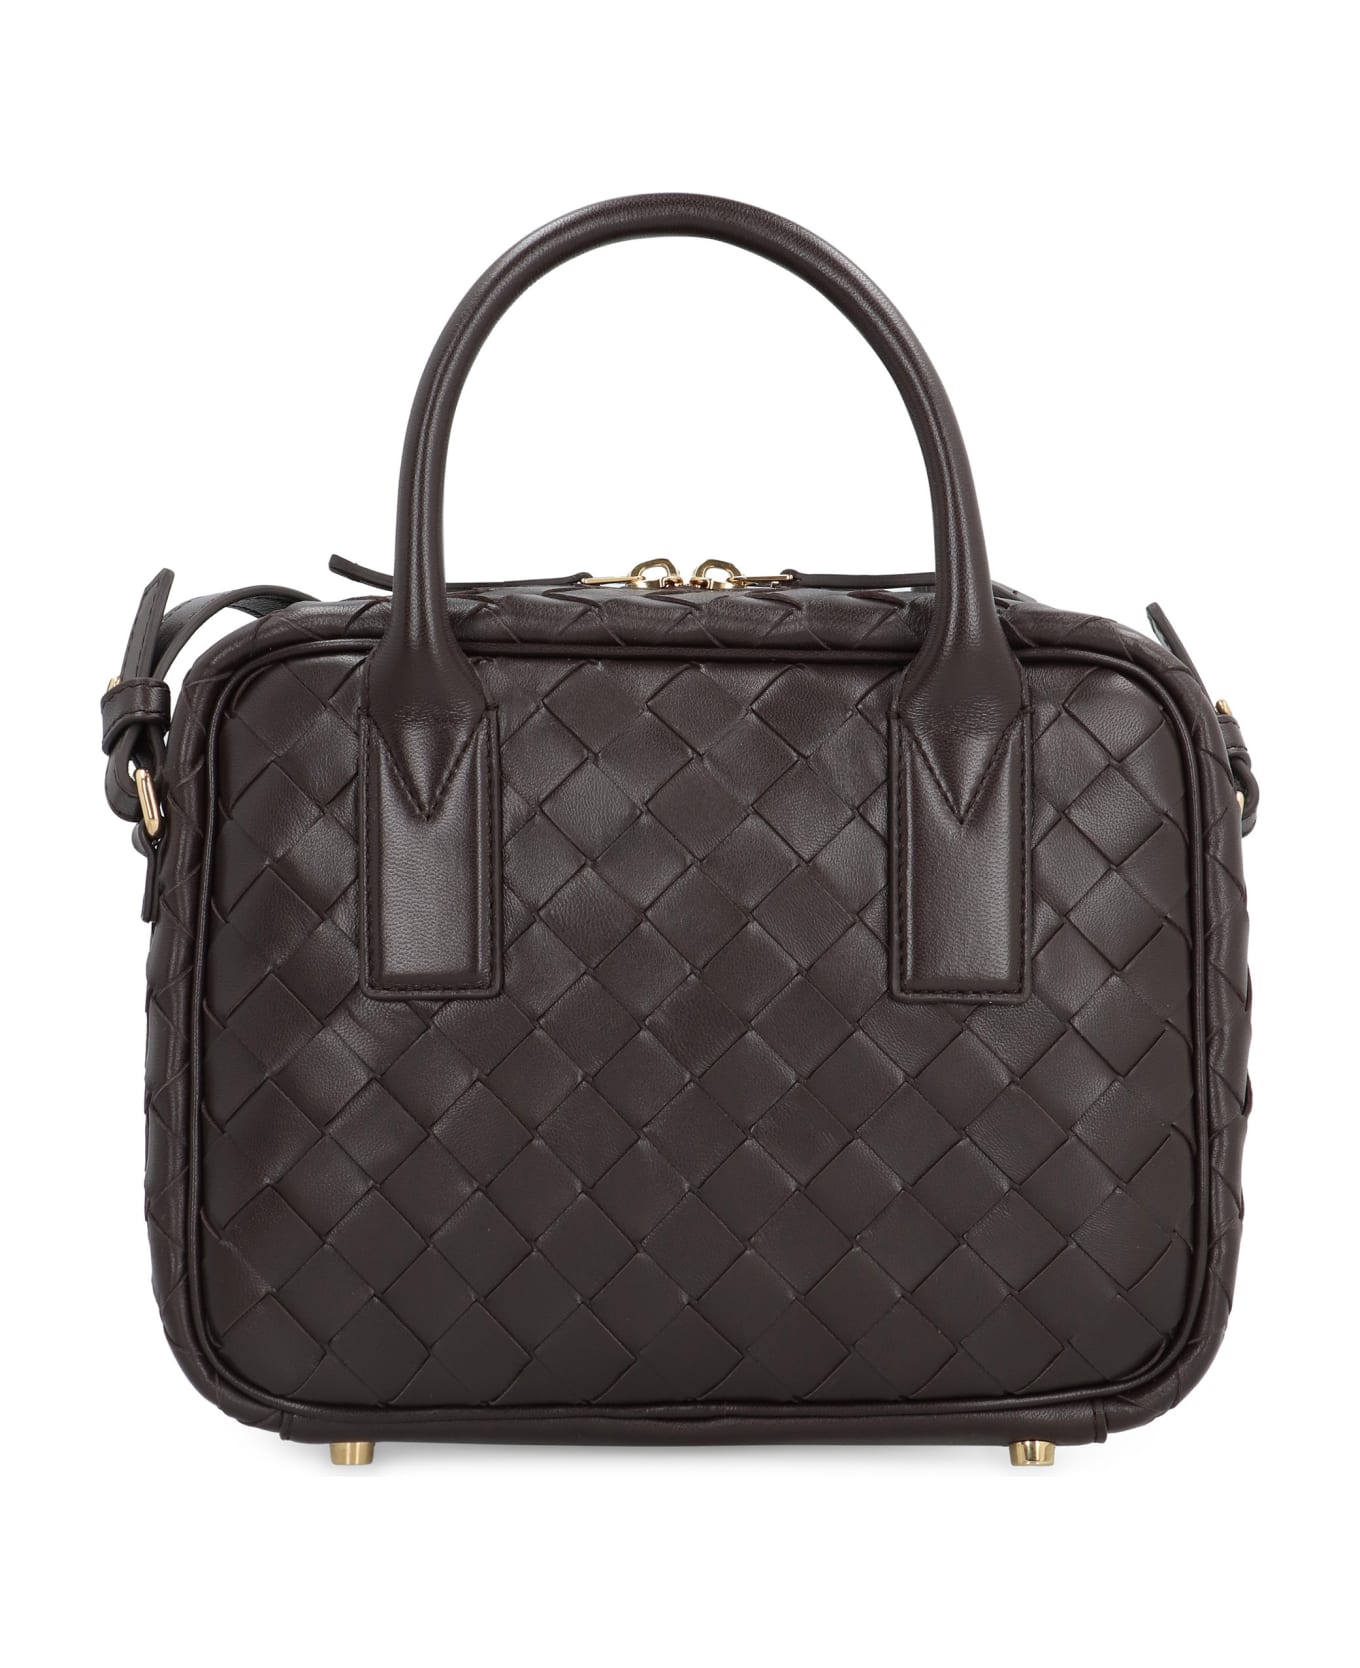 Bottega Veneta Getaway Leather Handbag - brown トートバッグ